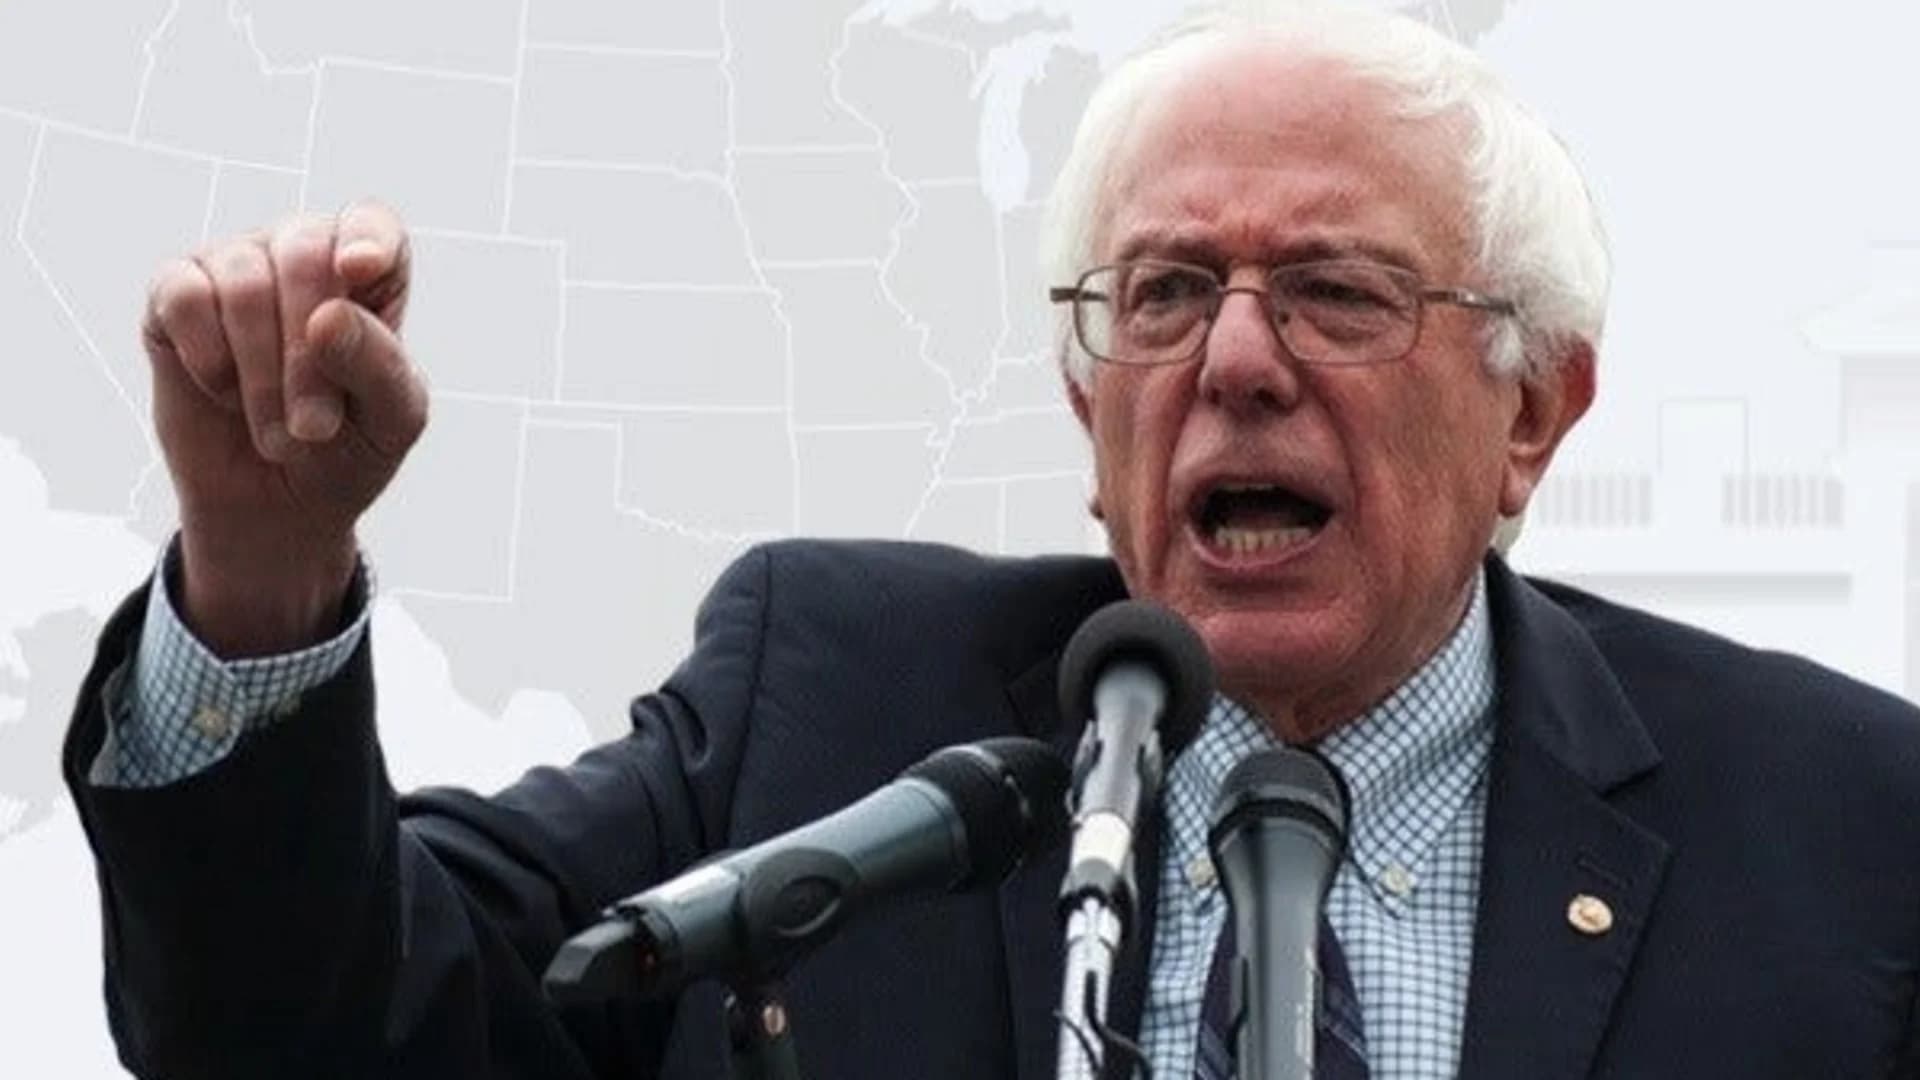 Sen. Bernie Sanders says he's running for president in 2020